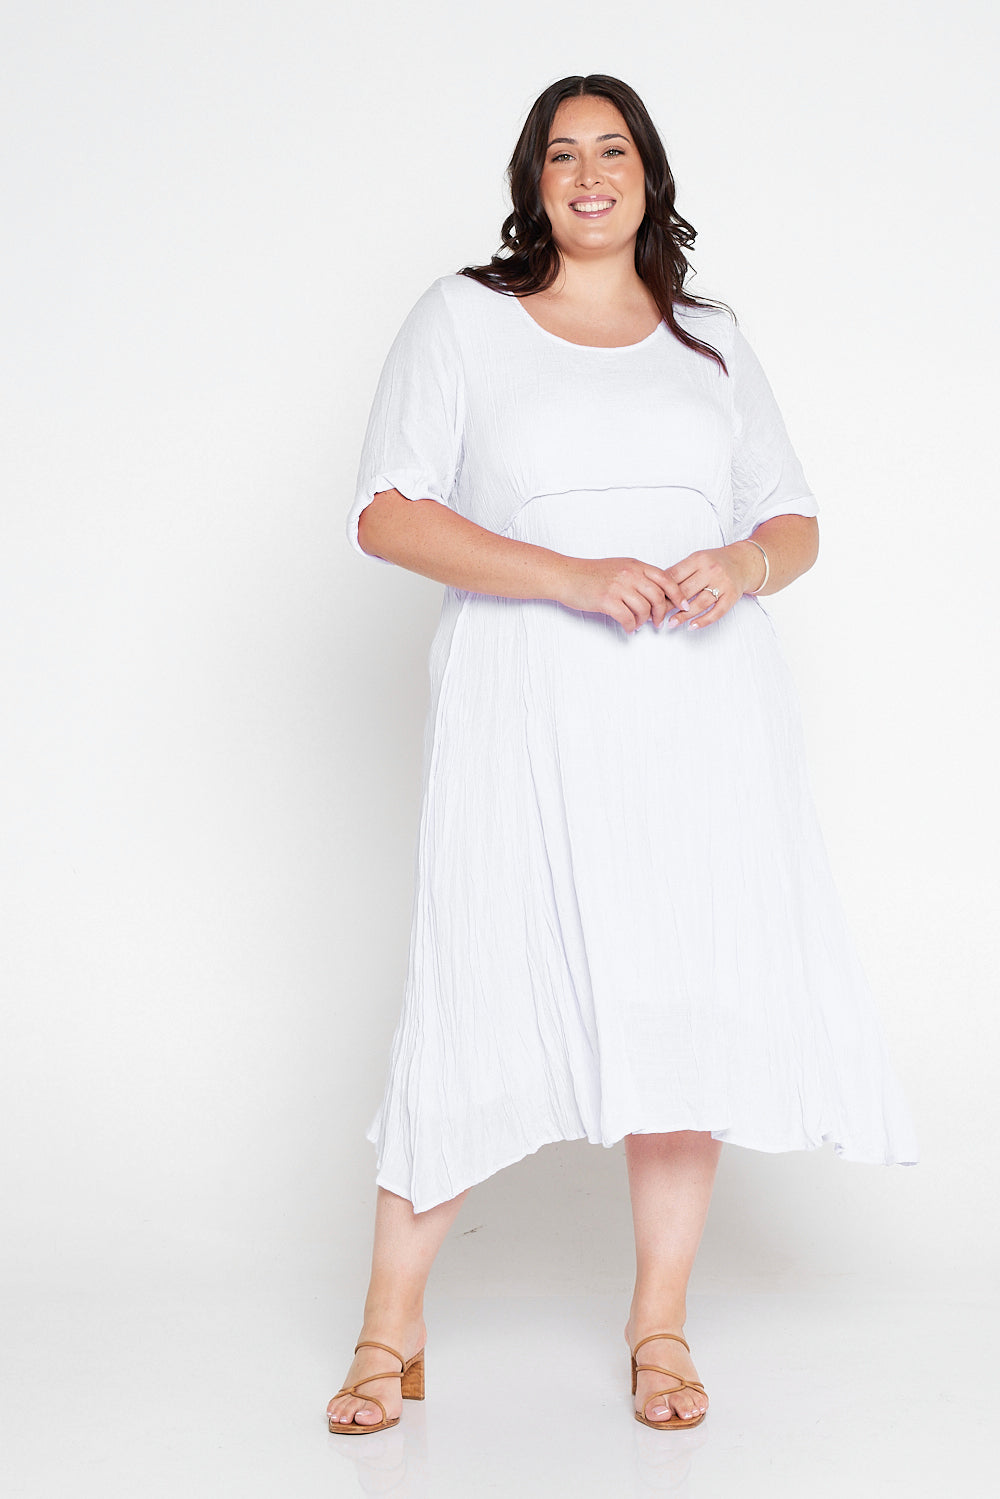 Waterhouse Dress - White